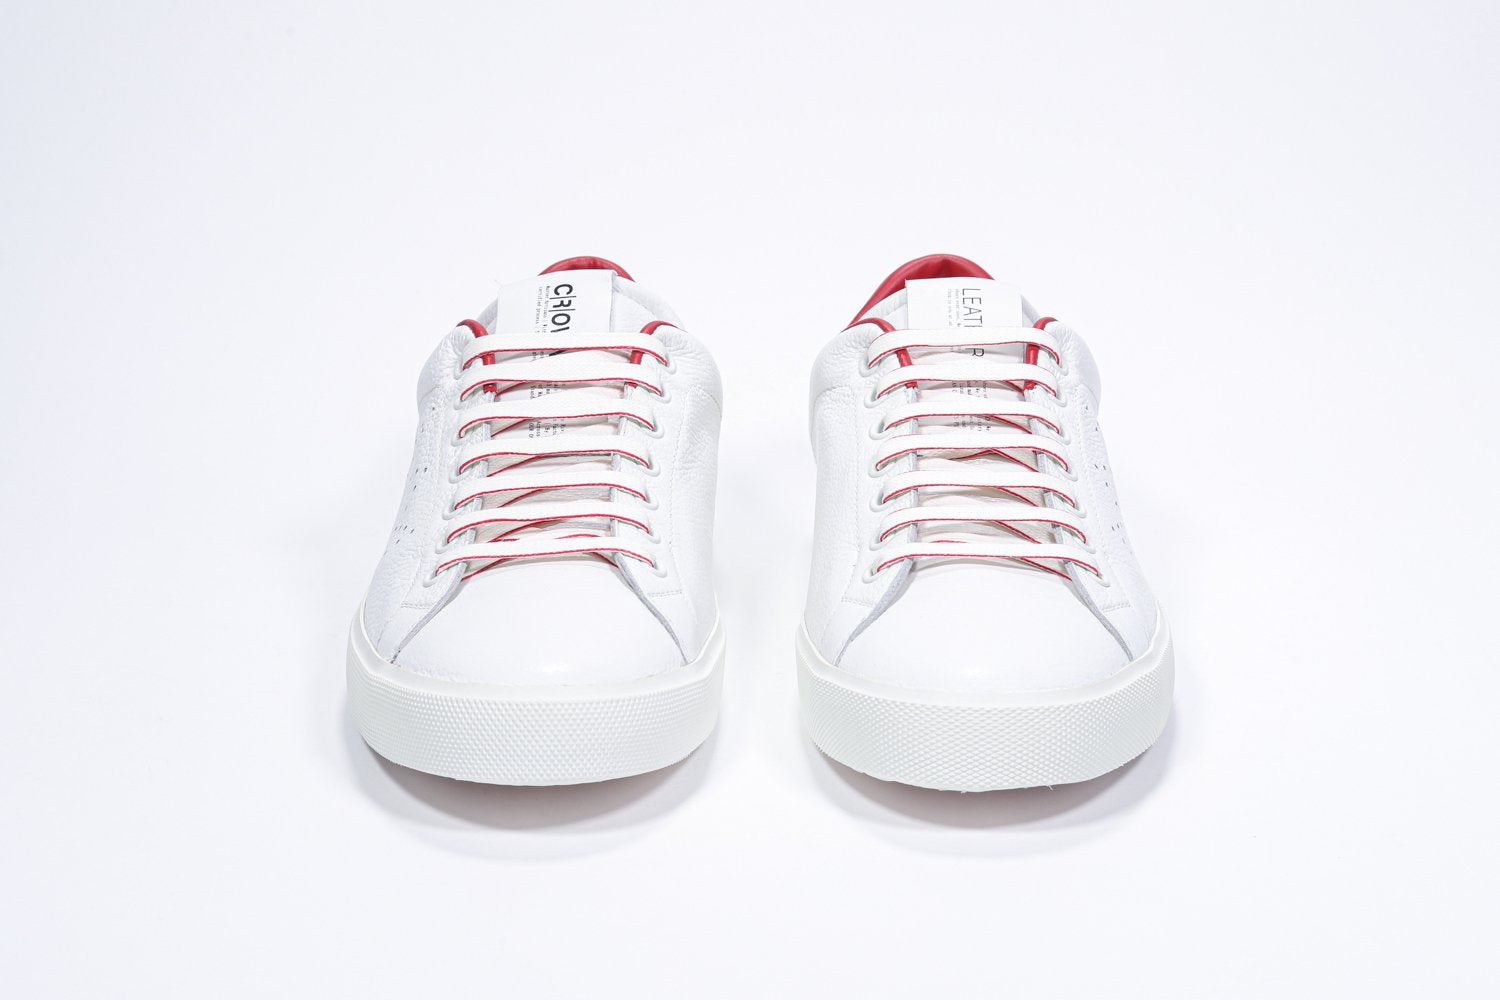 Vorderansicht des weißen Low Top sneaker mit roten Details und perforiertem Kronenlogo auf dem Obermaterial. Obermaterial aus Vollleder und weiße Gummisohle.